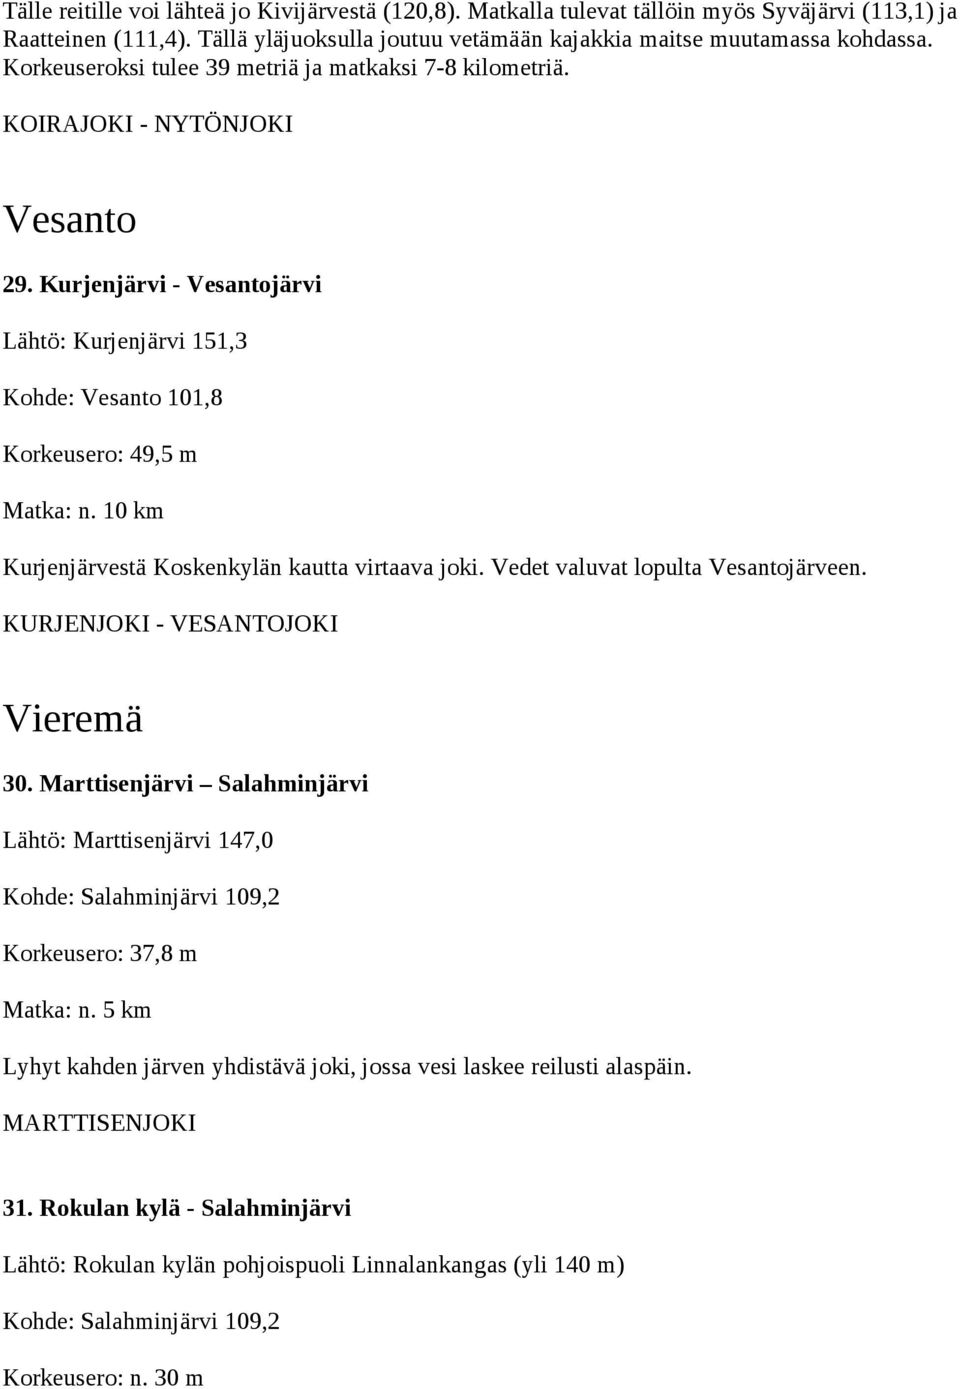 Kurjenjärvi - Vesantojärvi Lähtö: Kurjenjärvi 151,3 Kohde: Vesanto 101,8 Korkeusero: 49,5 m Kurjenjärvestä Koskenkylän kautta virtaava joki. Vedet valuvat lopulta Vesantojärveen.